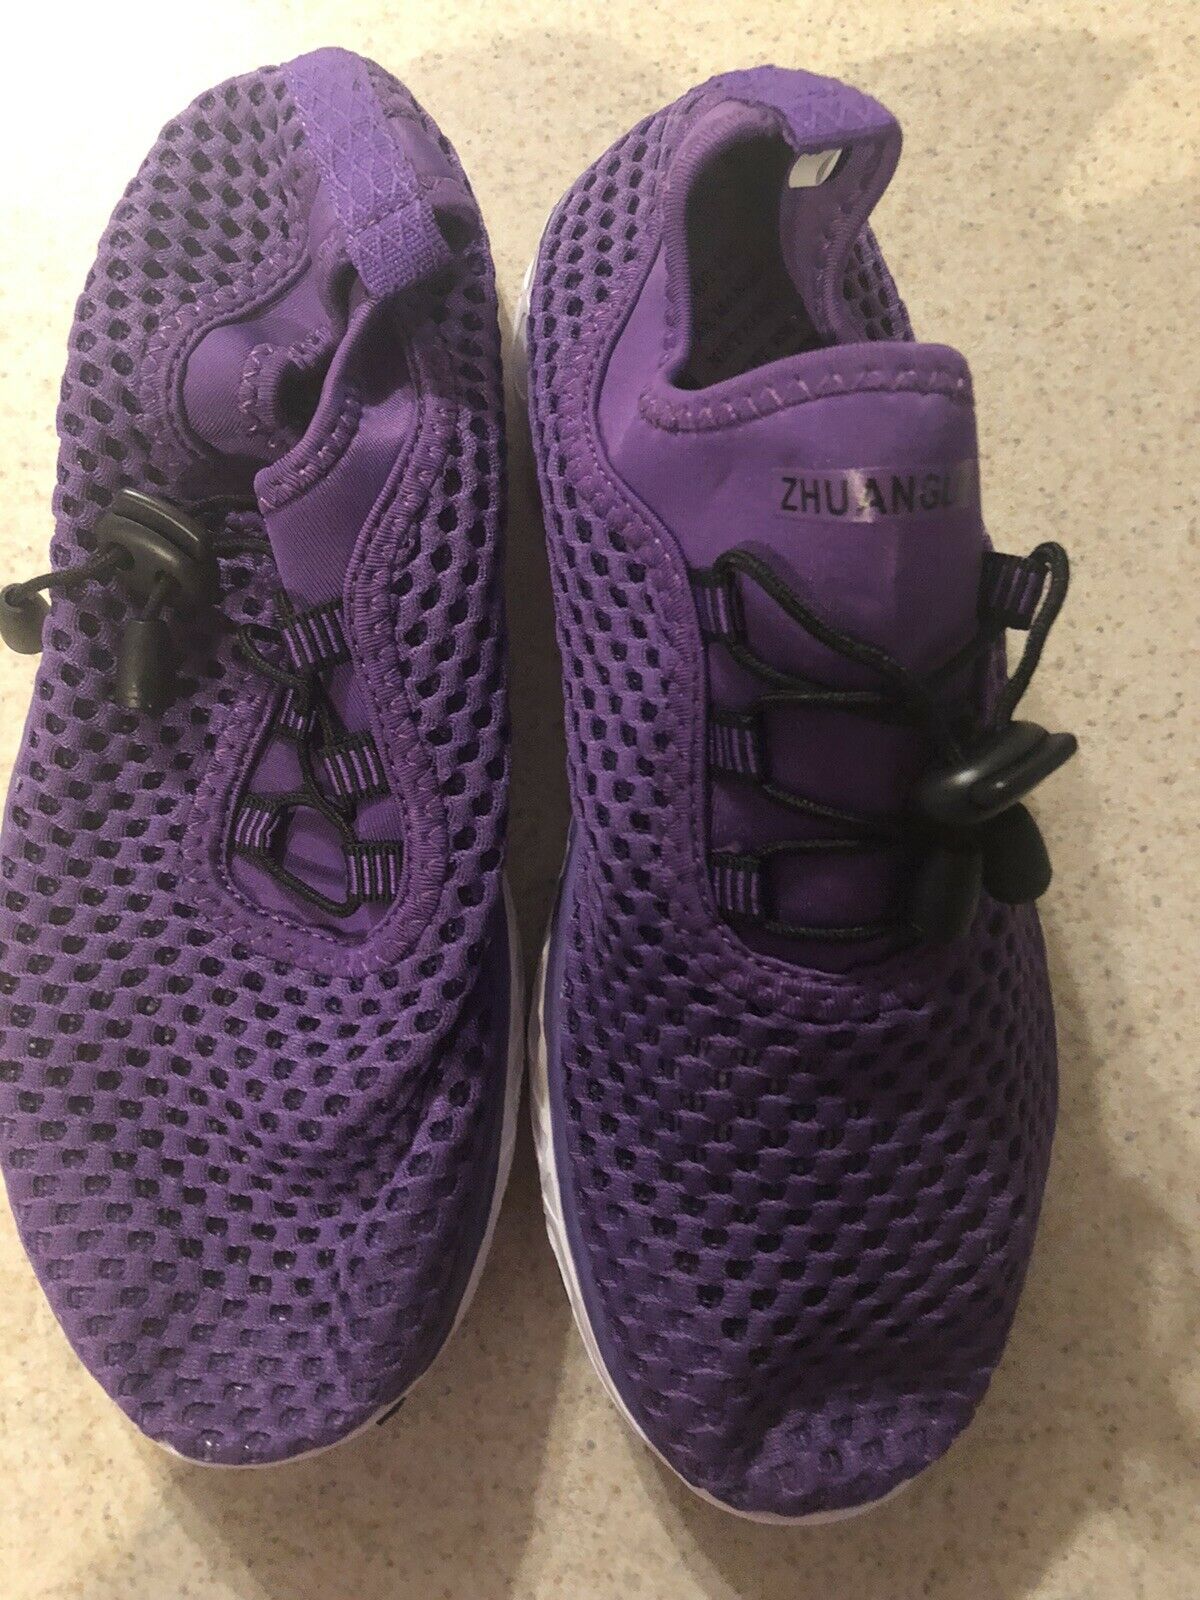 Zhuanglin Women's Quick Drying Aqua Water Shoes Casual Walking Shoes 7.5 Purple